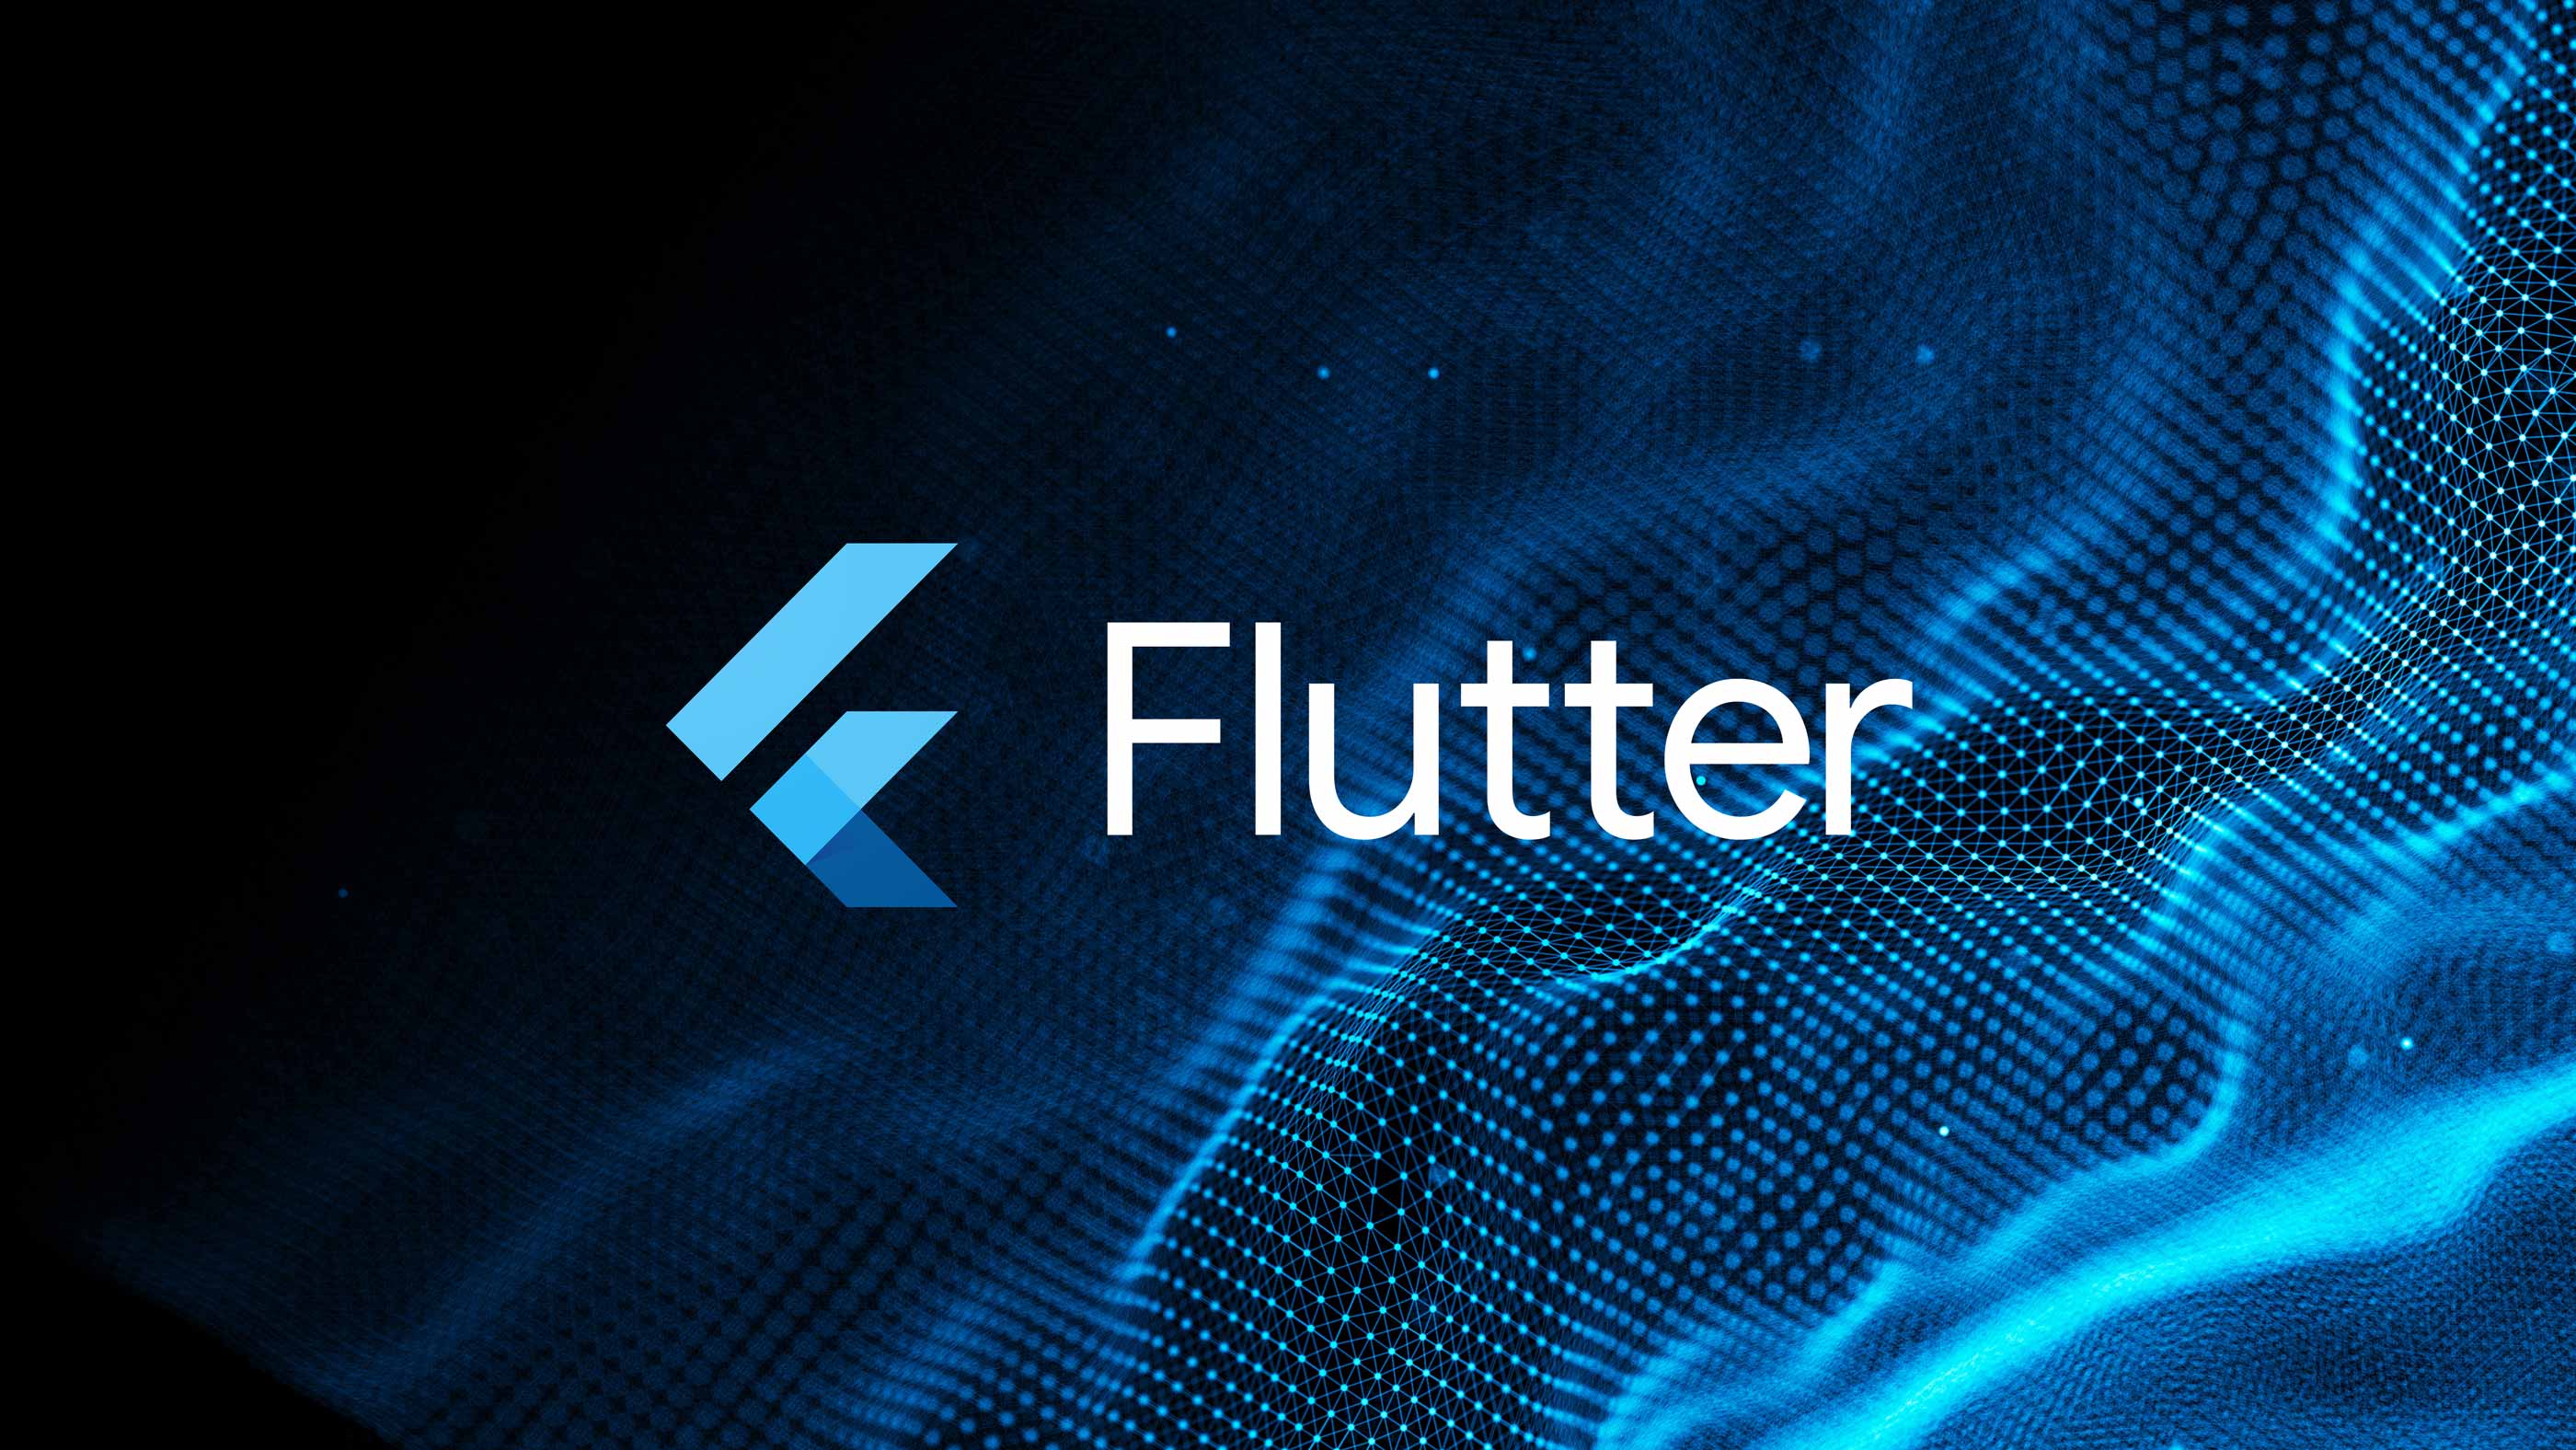 Flutter logo on a background of digital waves